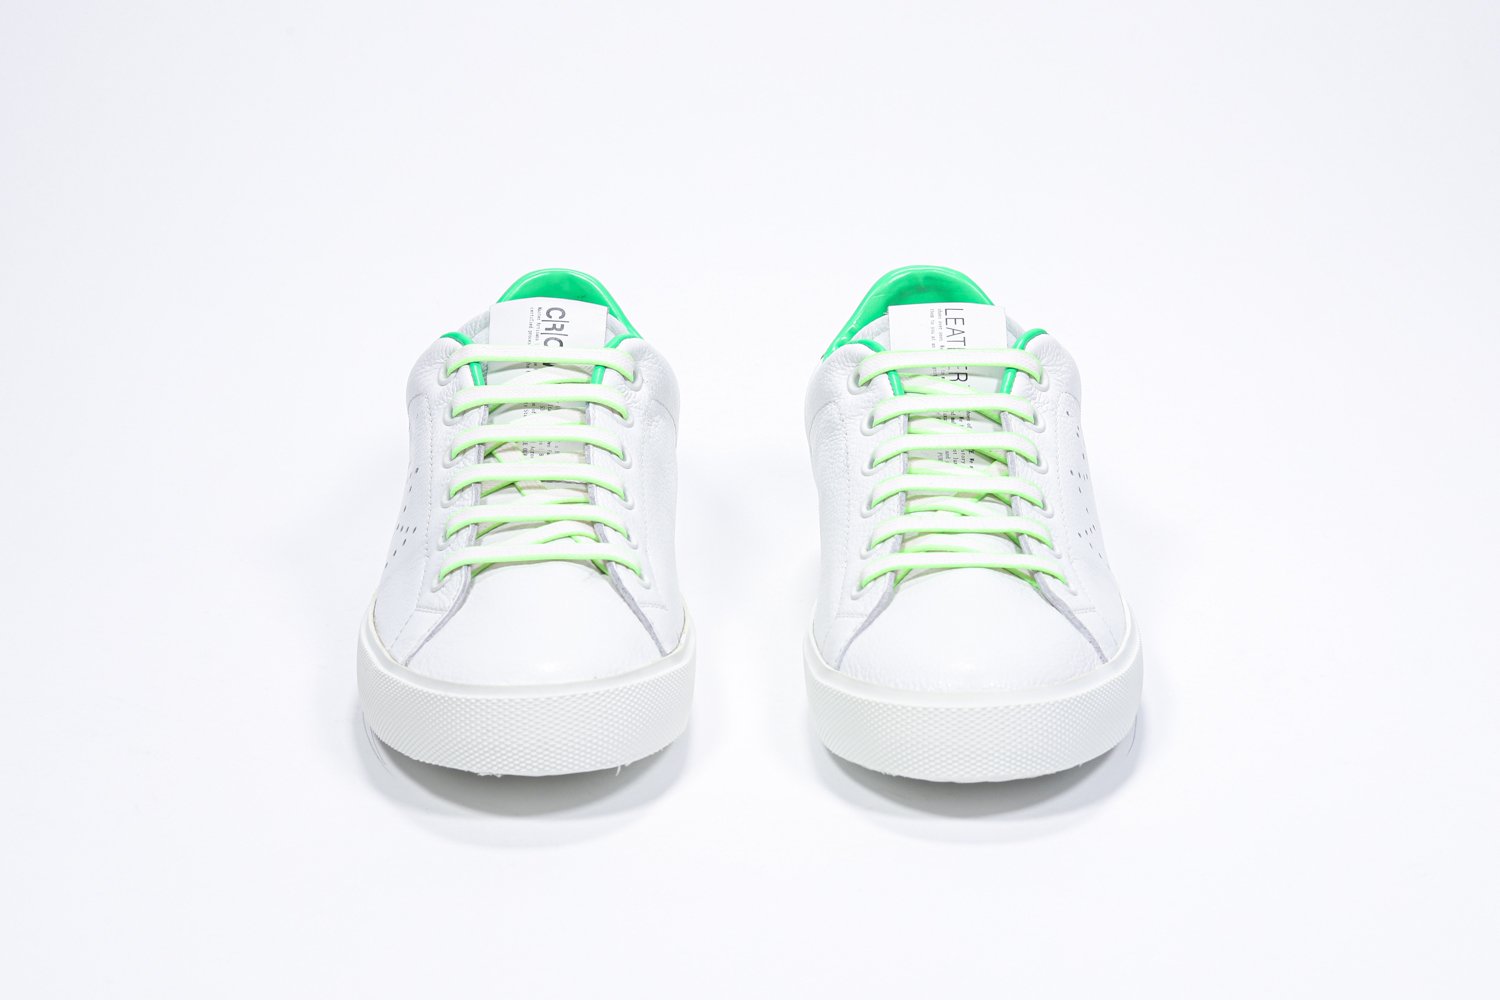 Vista frontale di BASSE  sneaker  bianco con dettagli verde neon e logo della corona traforato sulla tomaia. Tomaia in pelle e suola in gomma bianca.